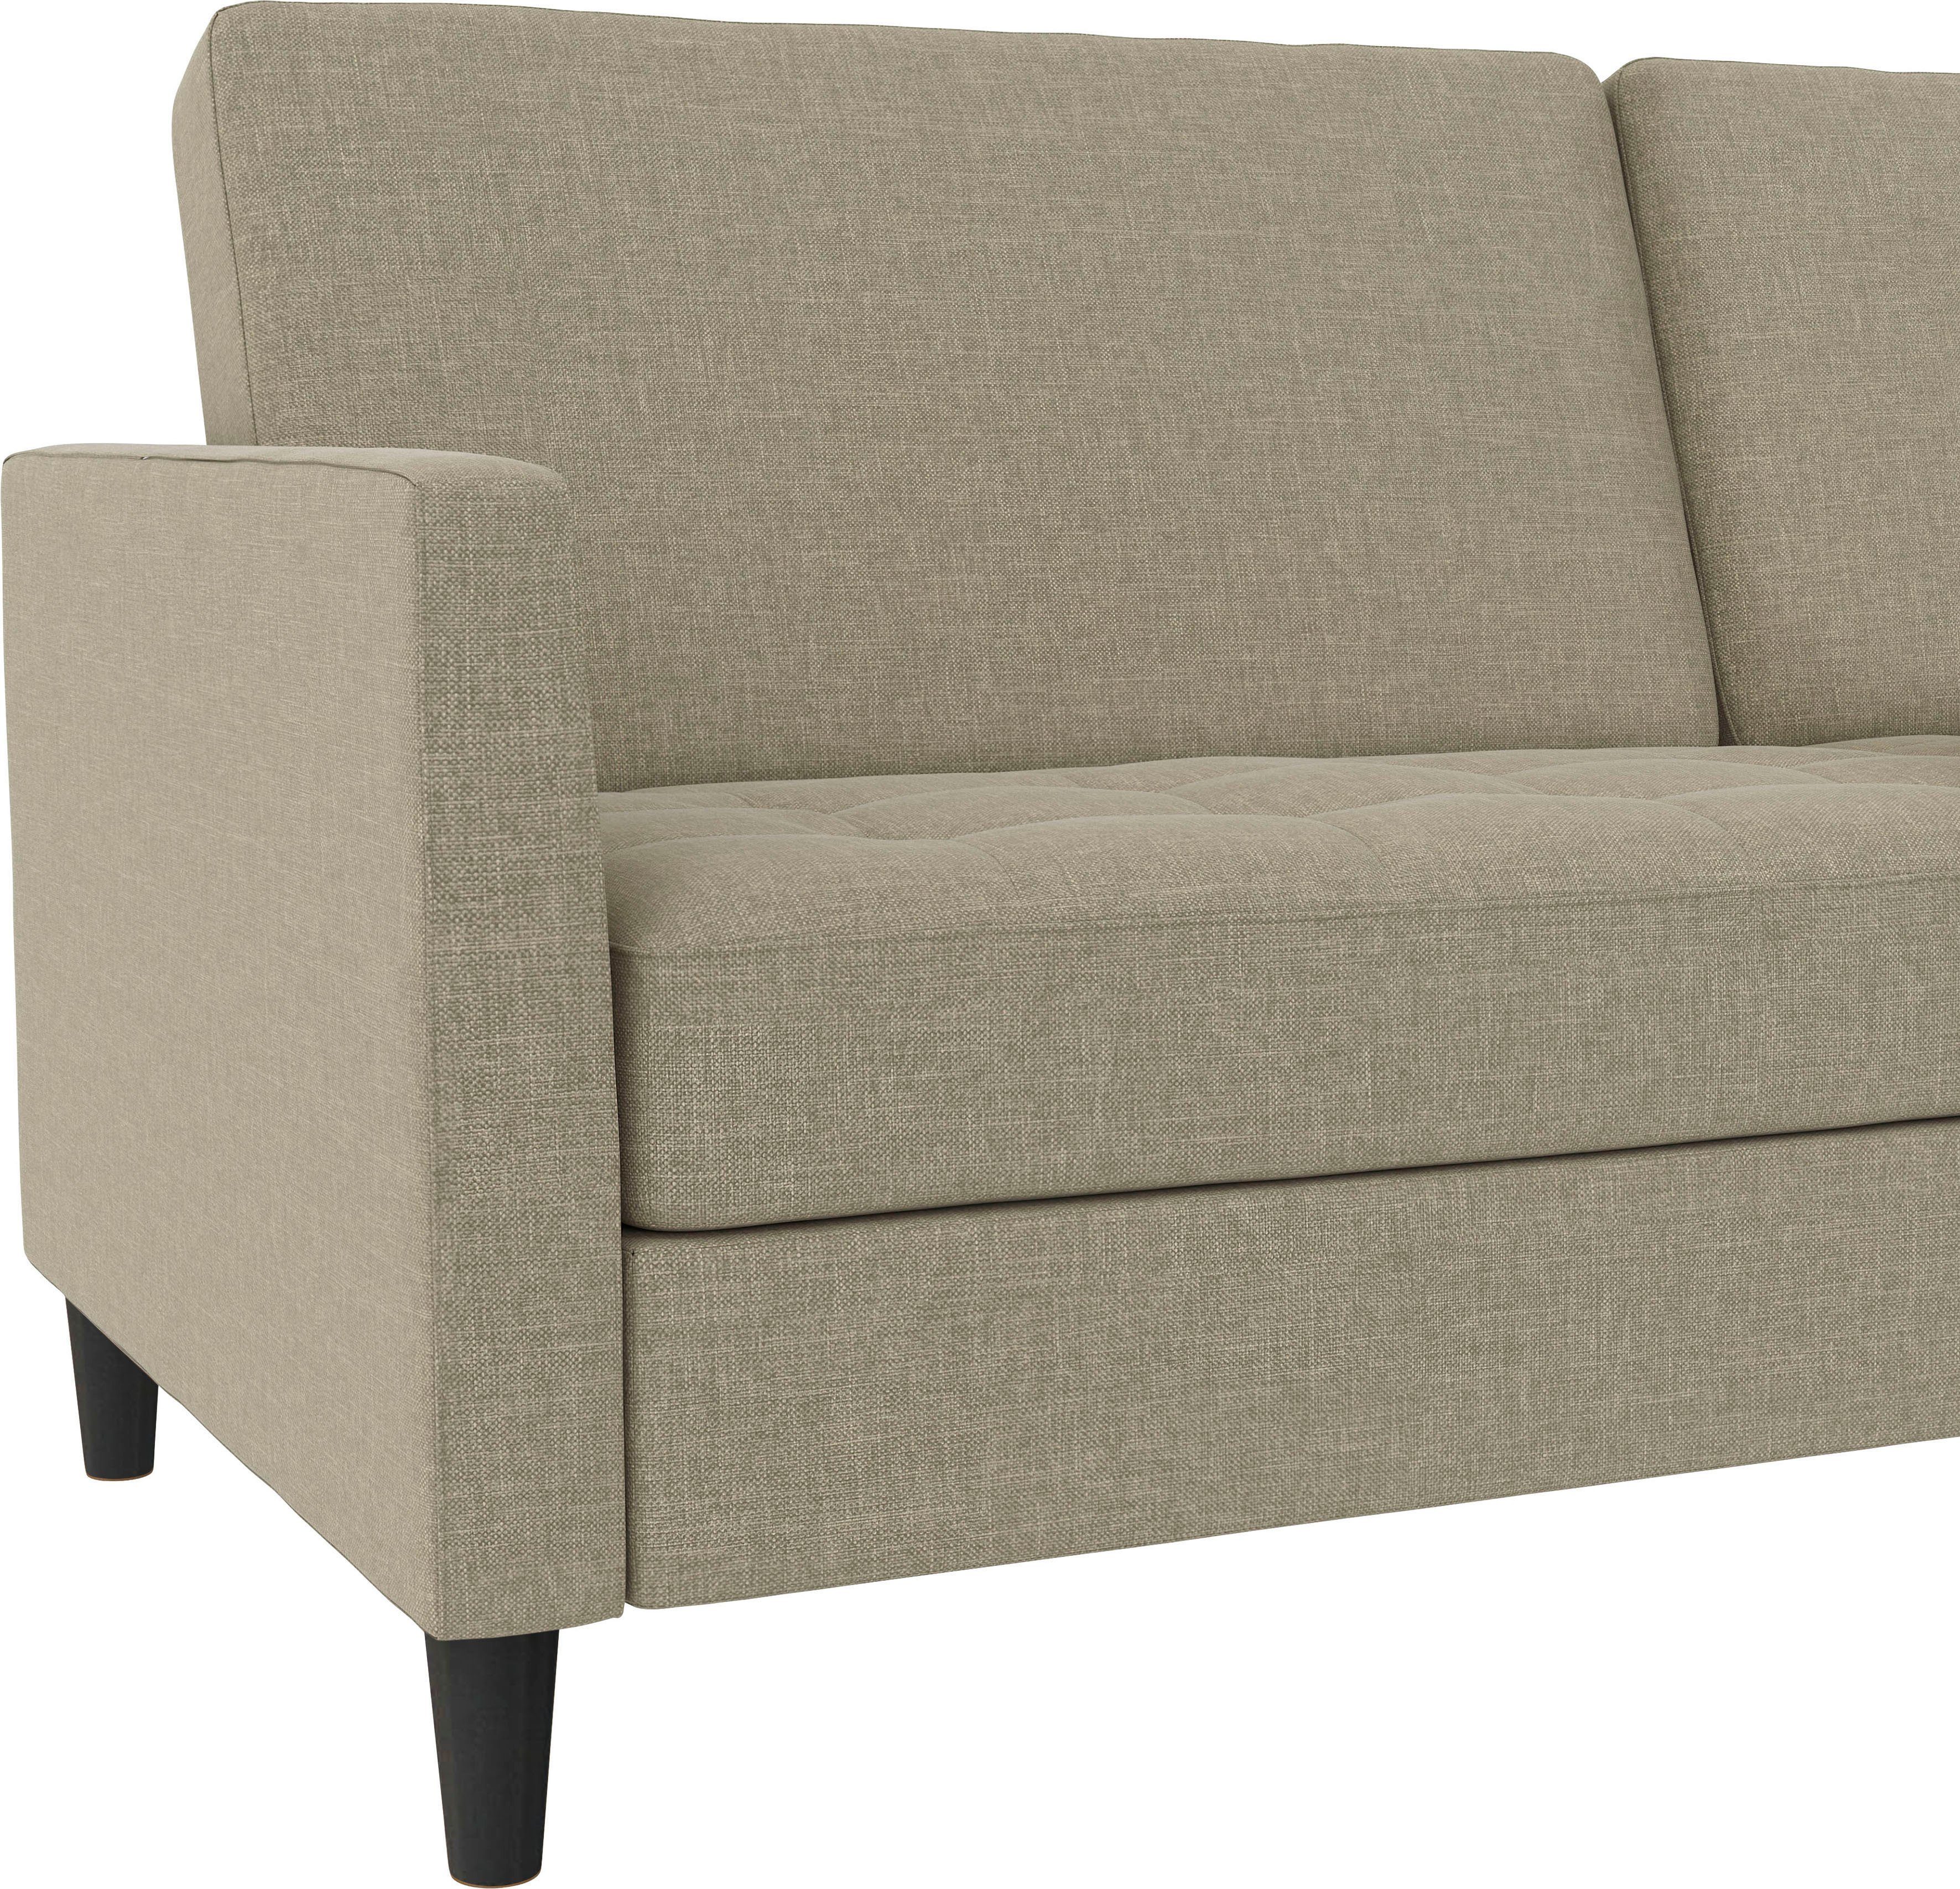 Dorel Home 3-Sitzer Presley, Bett-Funktion mit und Sofa verstellbarer Rückenlehne